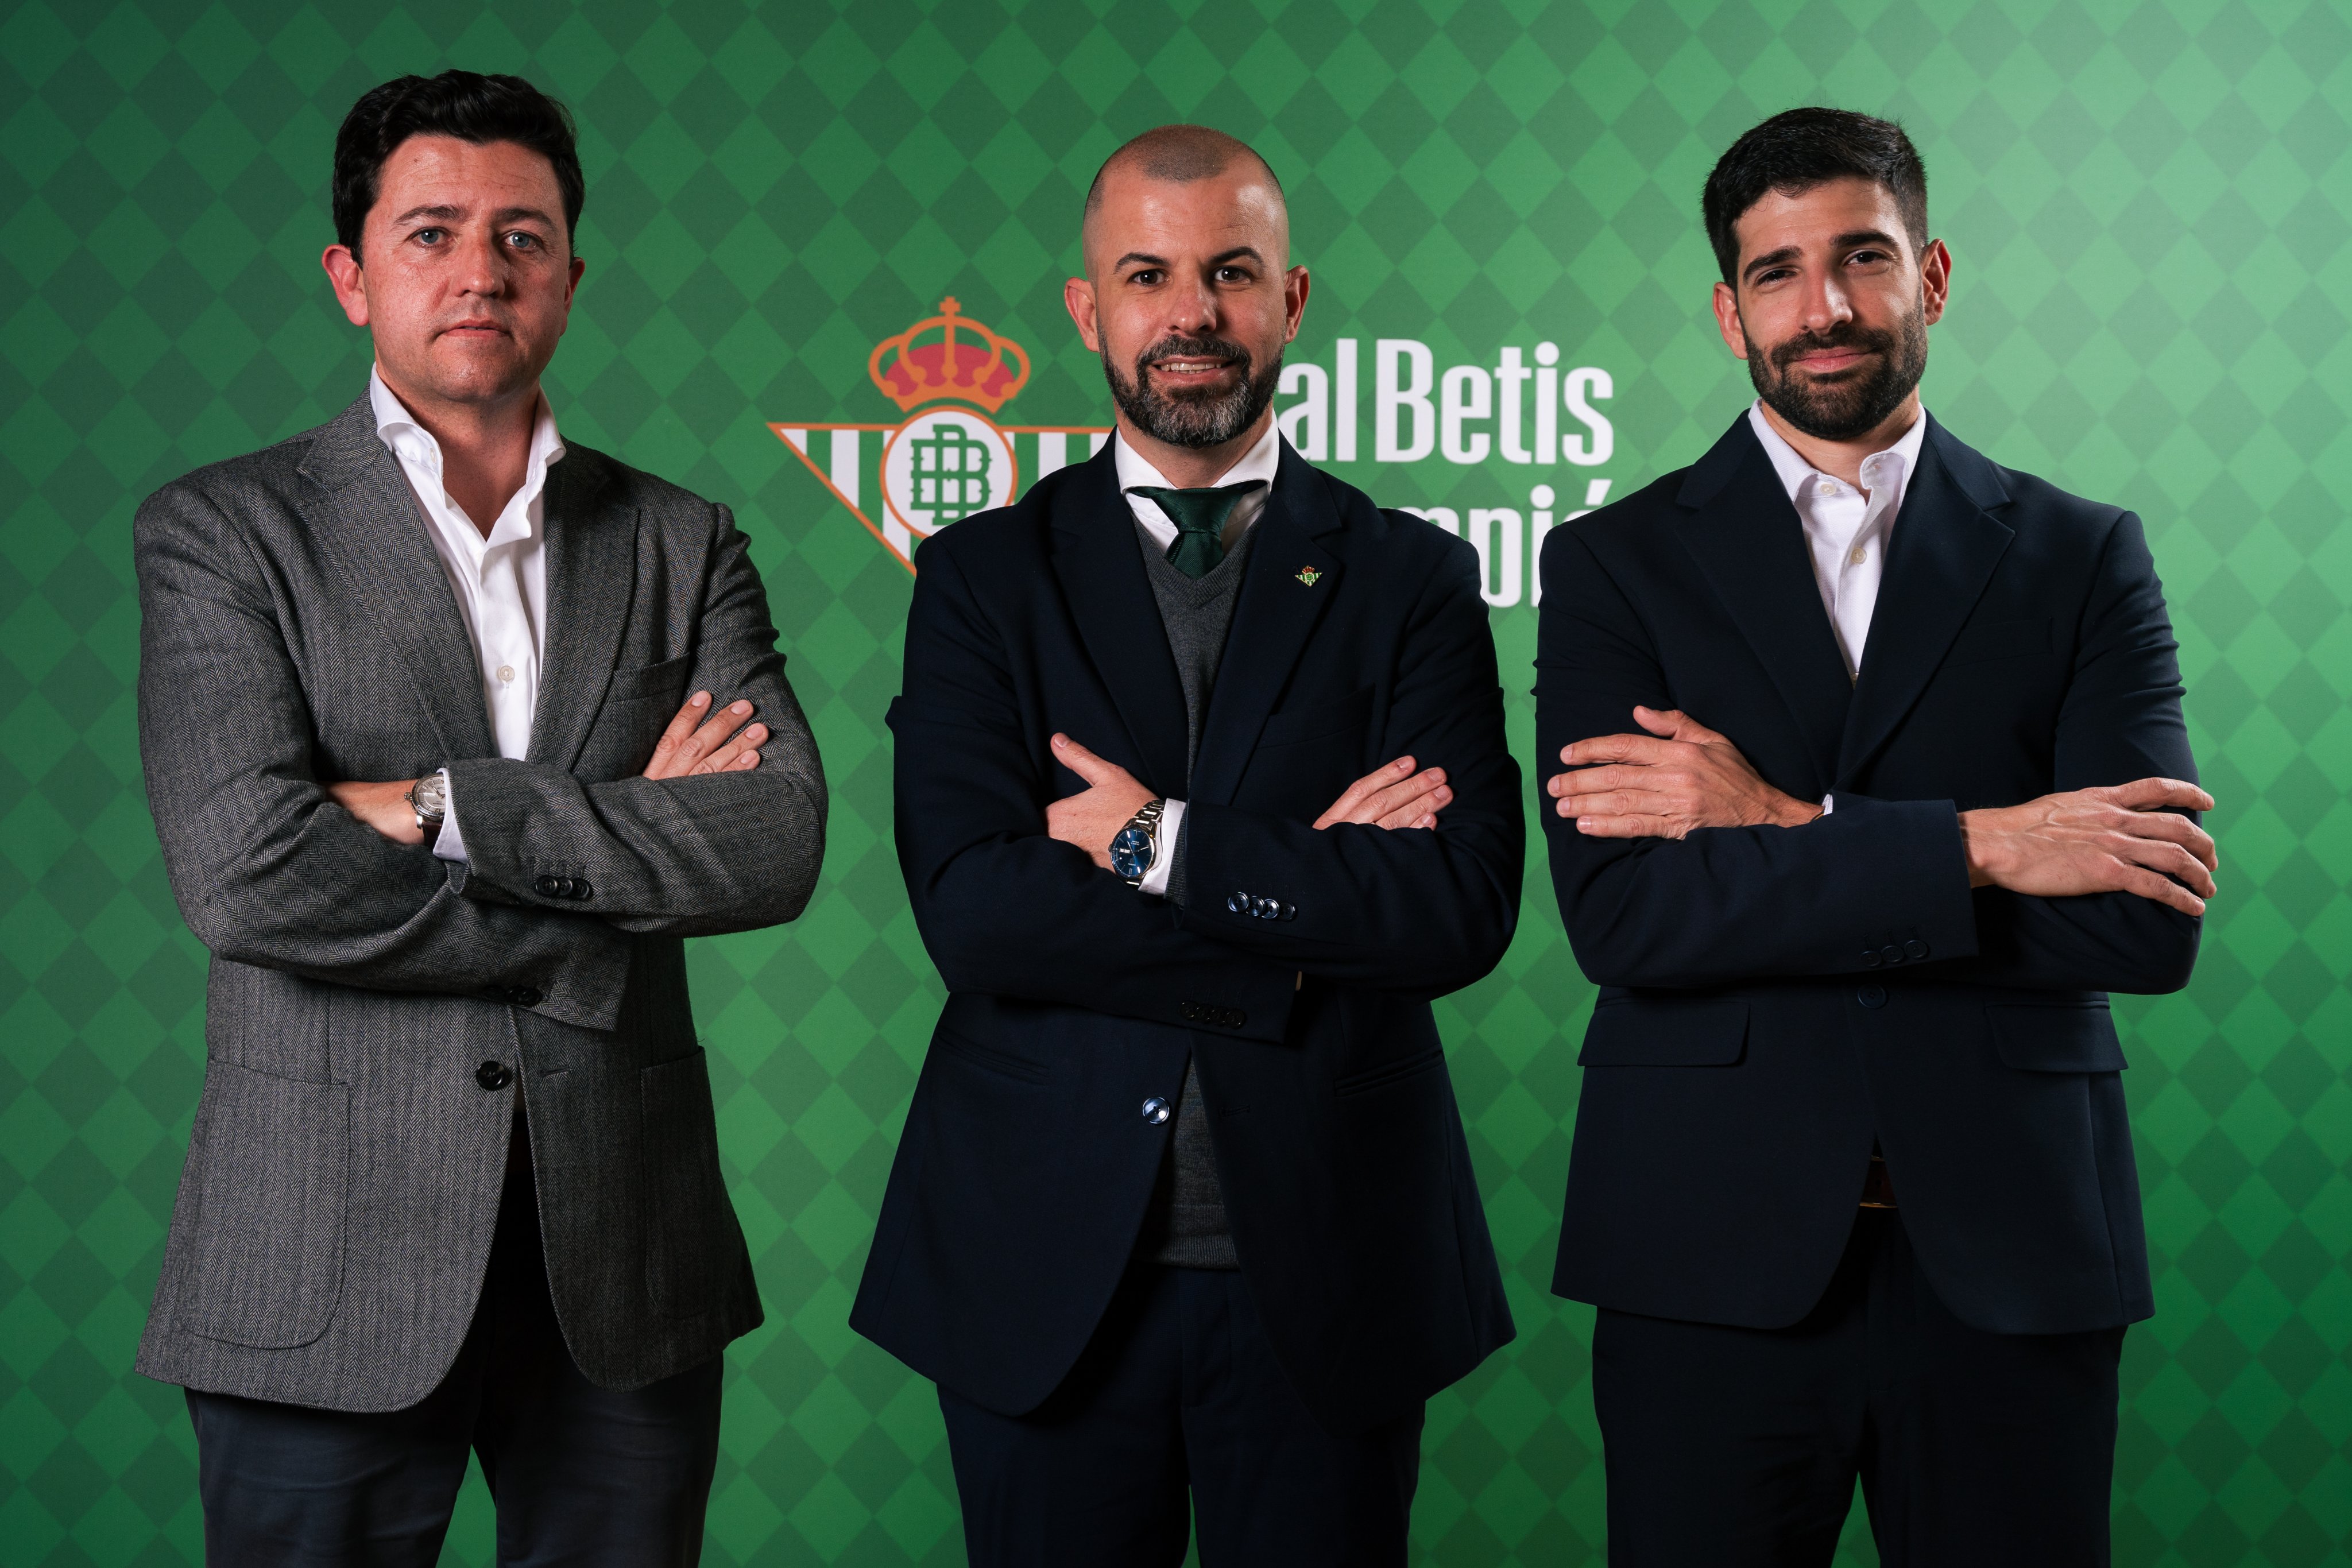 Real Betis reestructura su cúpula y mueve a Manuel Fajardo a la